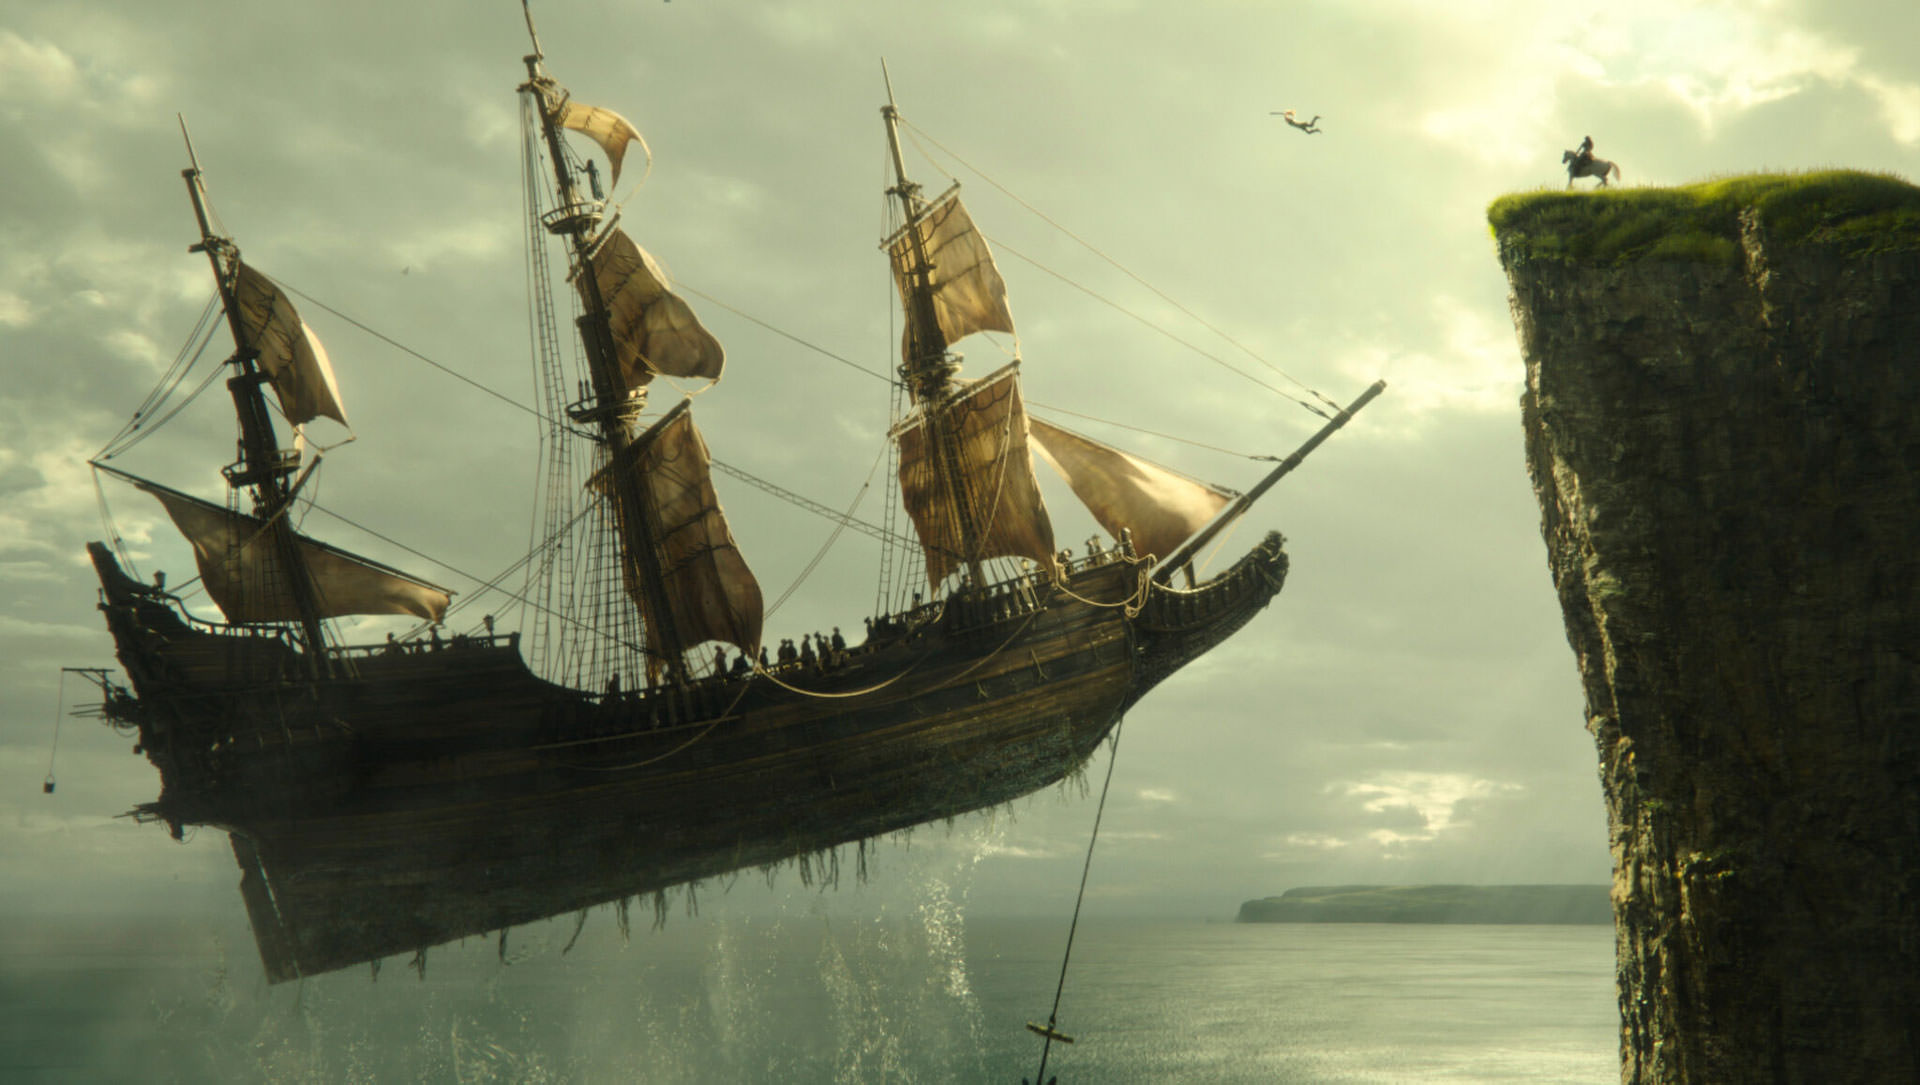 یک کشتی قدیمی در حال بلند شدن از زمین مقابل یک صخره در نمایی از فیلم پیتر پن و وندی به کارگردانی دیوید لاوری